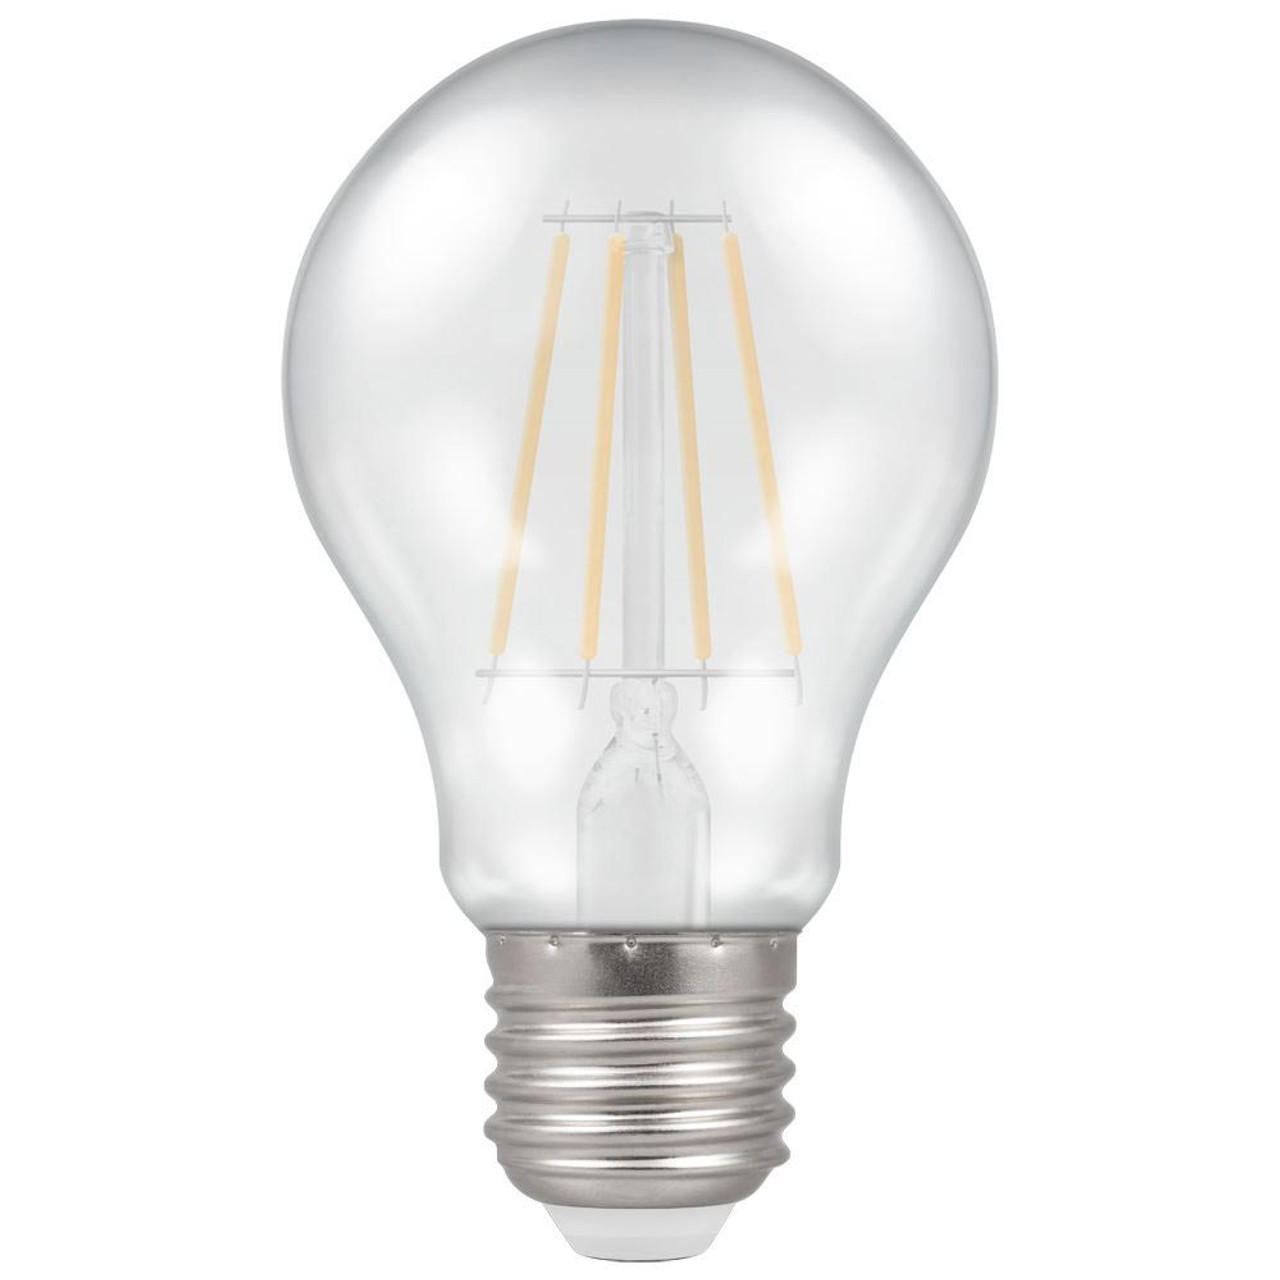 LED Filament Harlequin GLS 4.5W 240V ES White